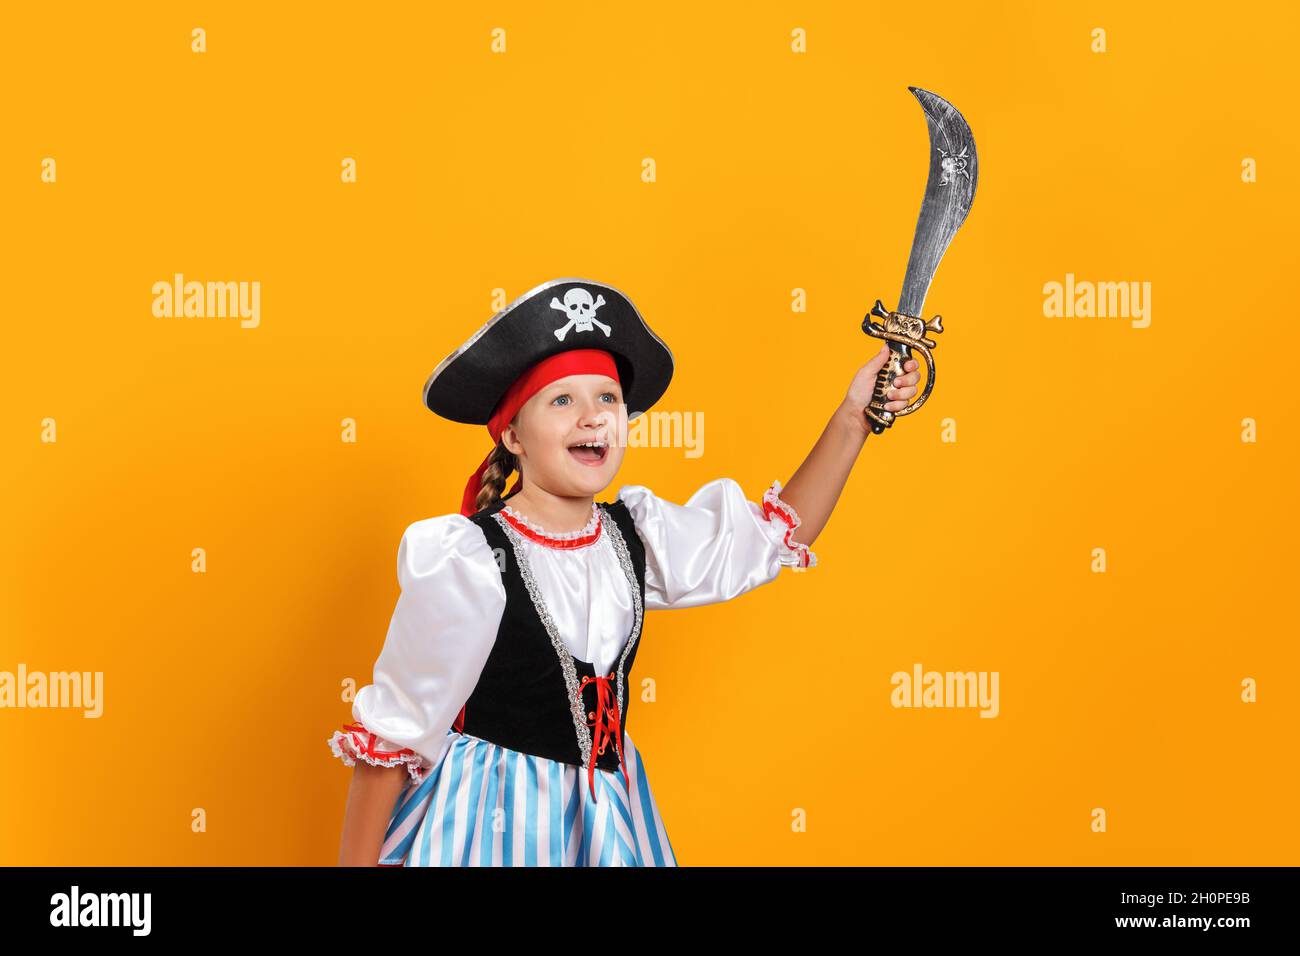 Halloween. Fröhliches kleines Mädchen in einem Karnevalskostüm eines Piraten im Studio auf einem farbigen gelben Hintergrund. Das Kind hält einen Säbel. Stockfoto